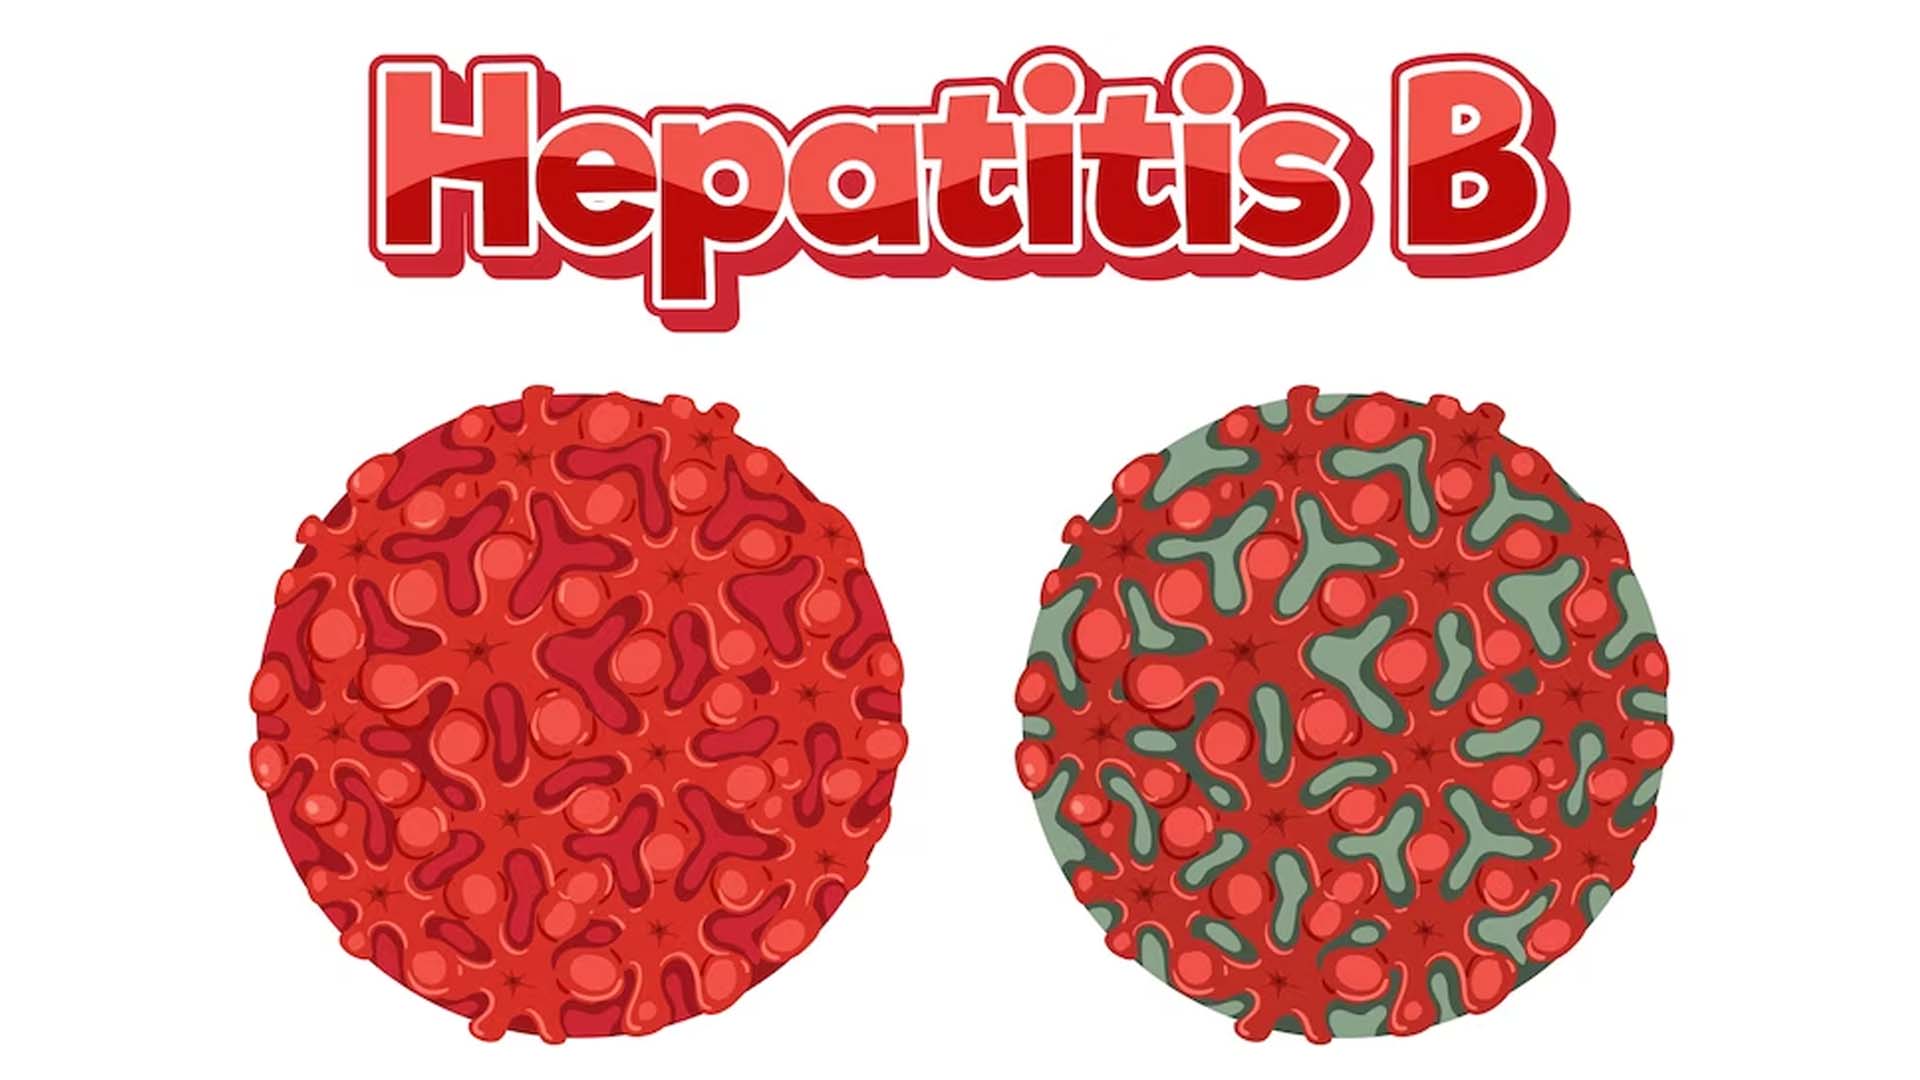 Causes of Hepatitis B?